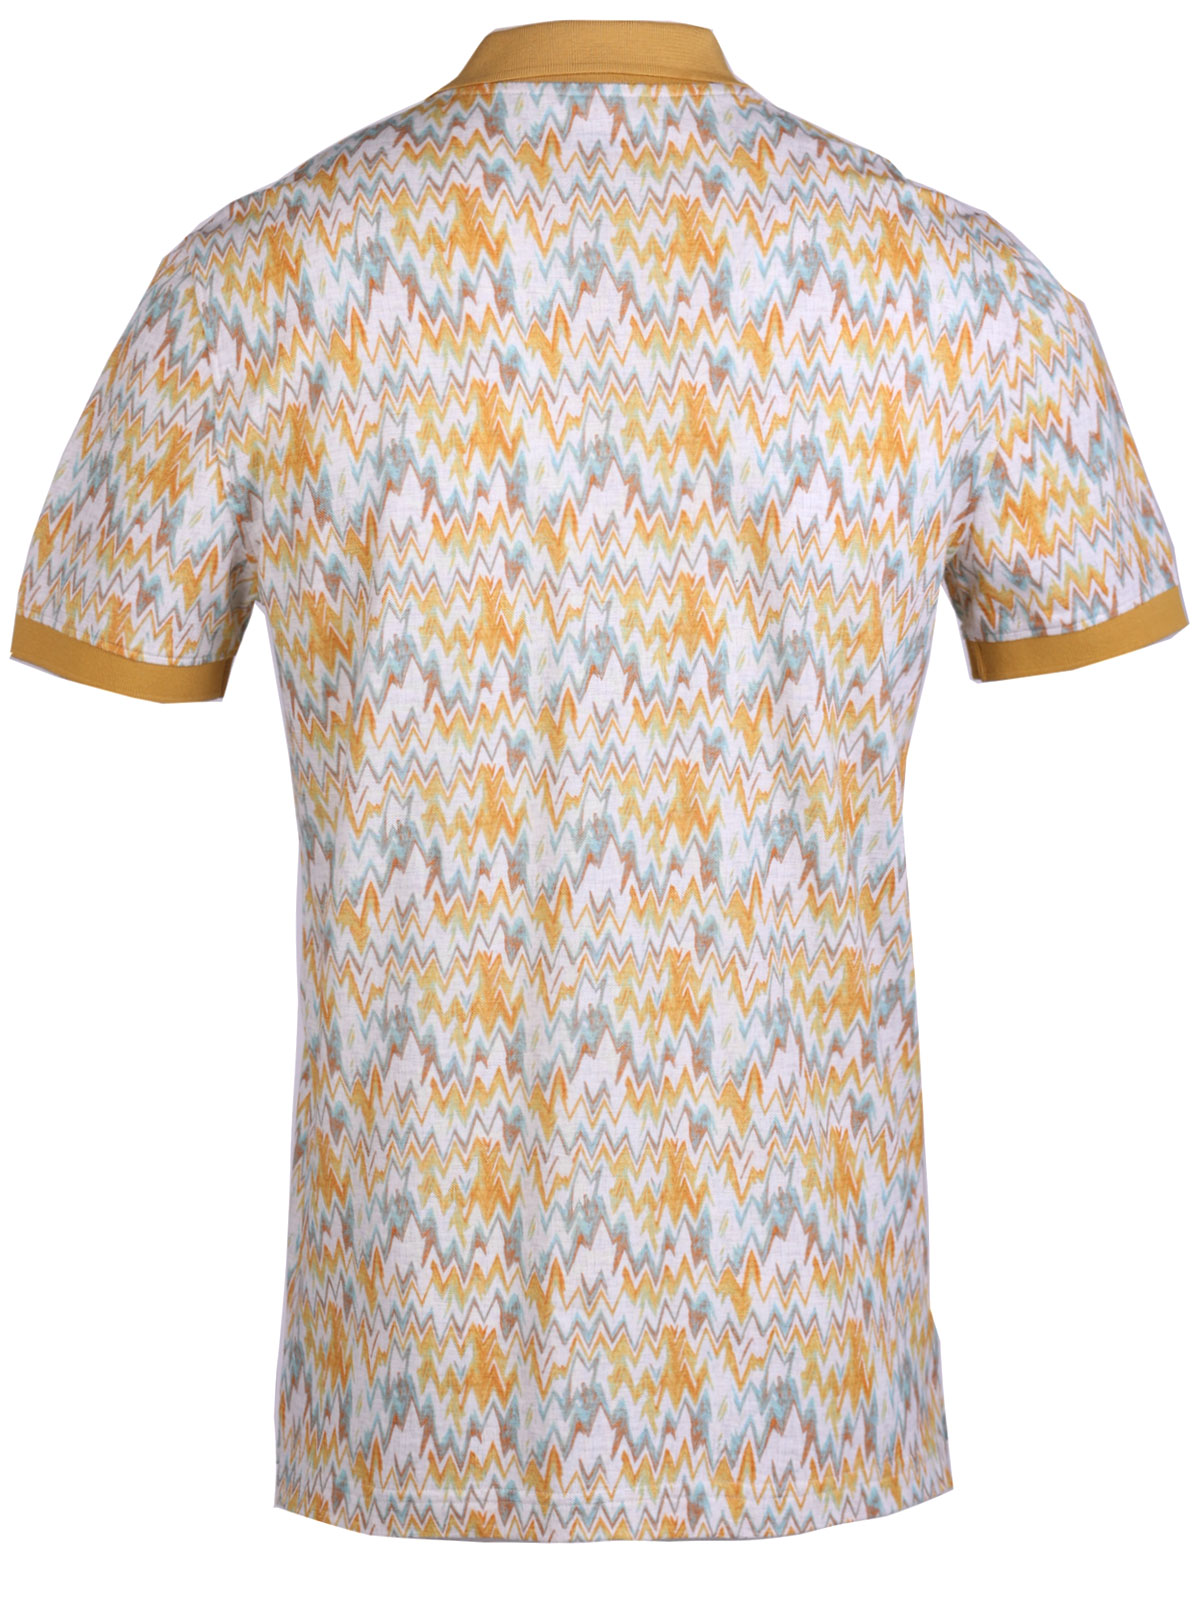 Тениска с жълти и сини фигури - 93449 76.00 лв img2